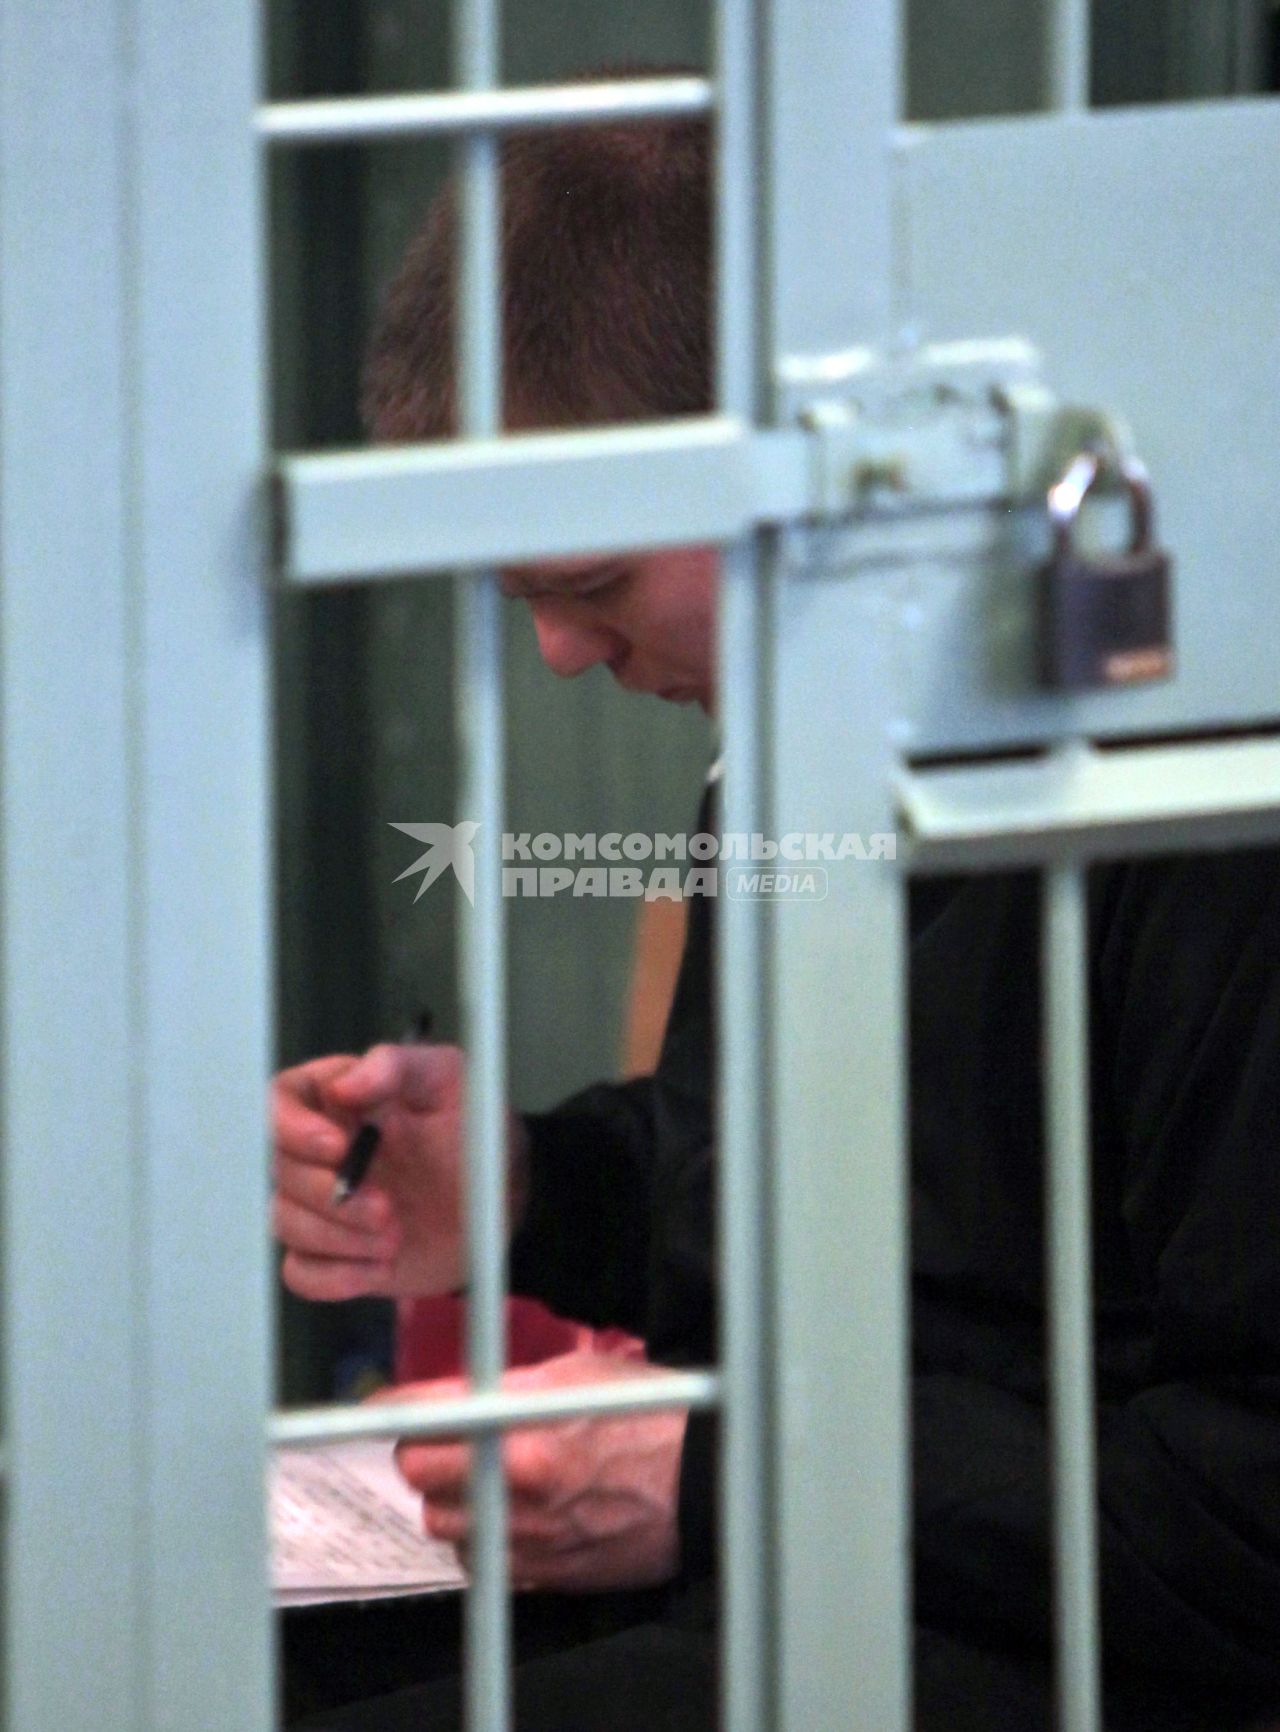 Суд над бандой фашистов Боровикова-Воеводина. Спб. На снимке: заключенный под стражу участник банды. 14 июня 2010 года.